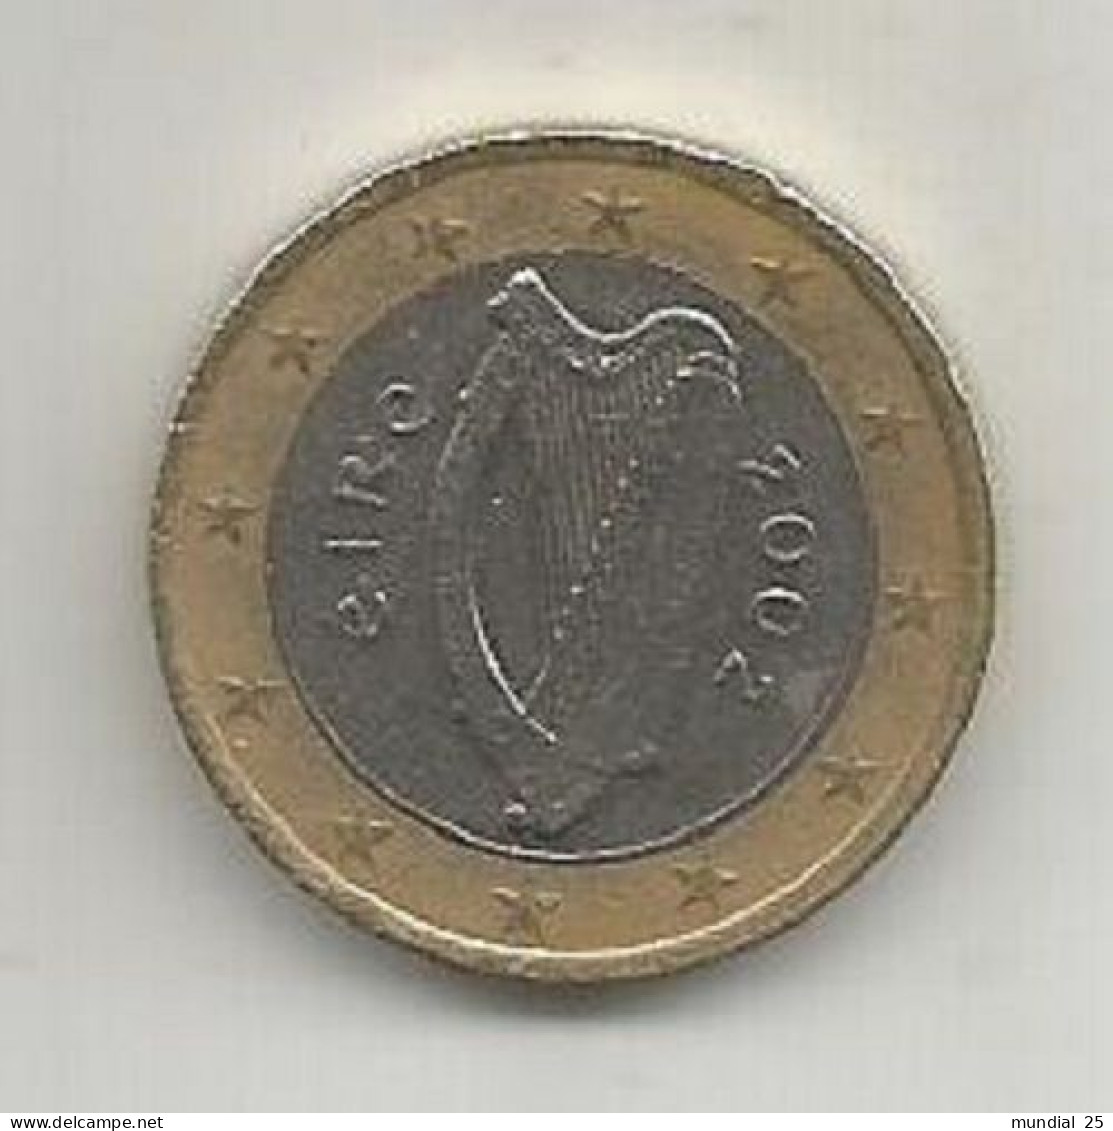 IRELAND 1 EURO 2002 - Irlanda